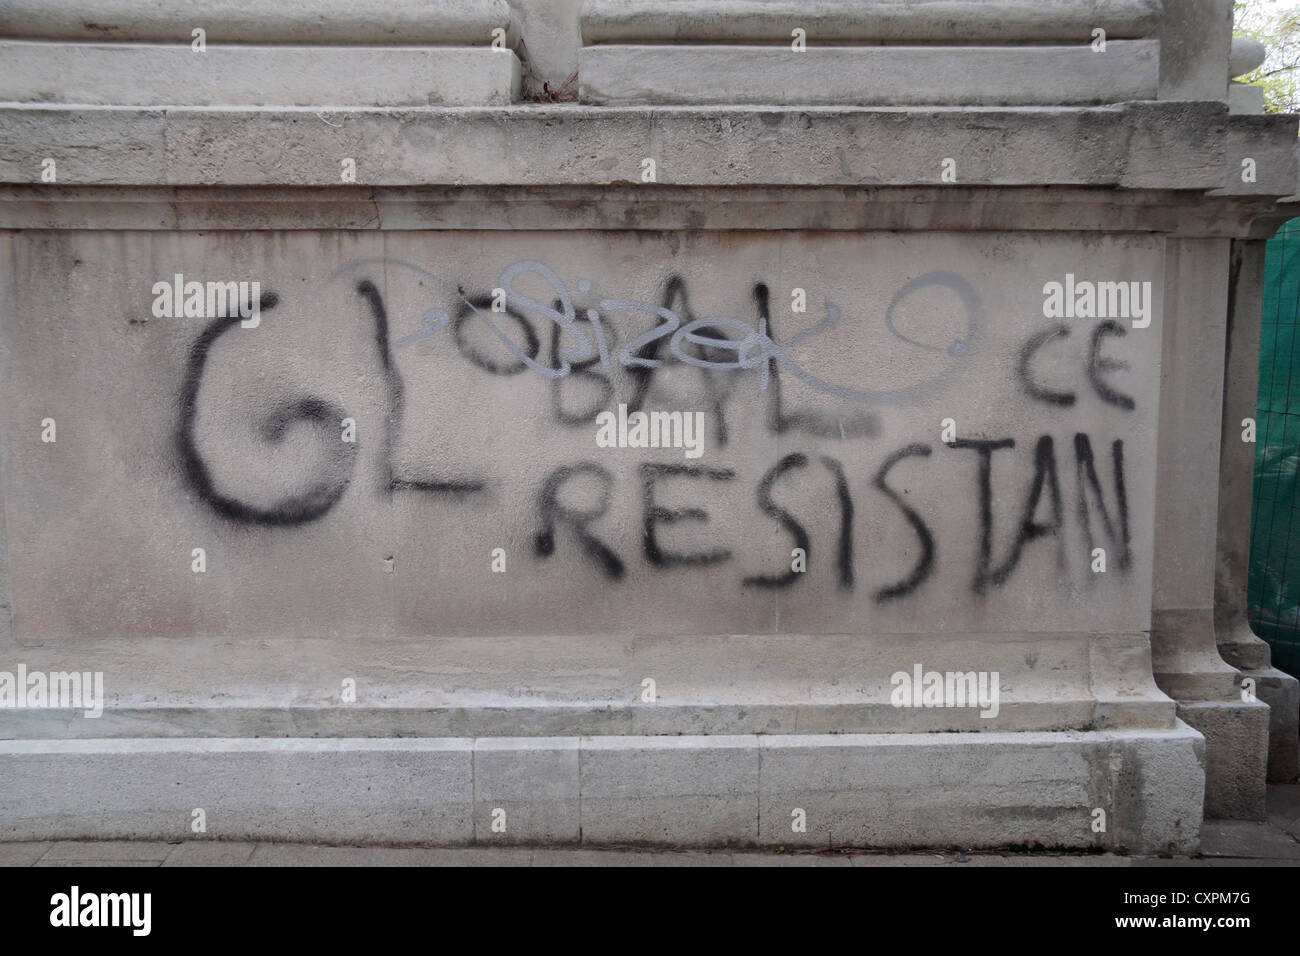 Graffiti amusant erreur (manque de place pour le mot "résistance") sur un mur à Vienne (Wien), l'Autriche. Banque D'Images